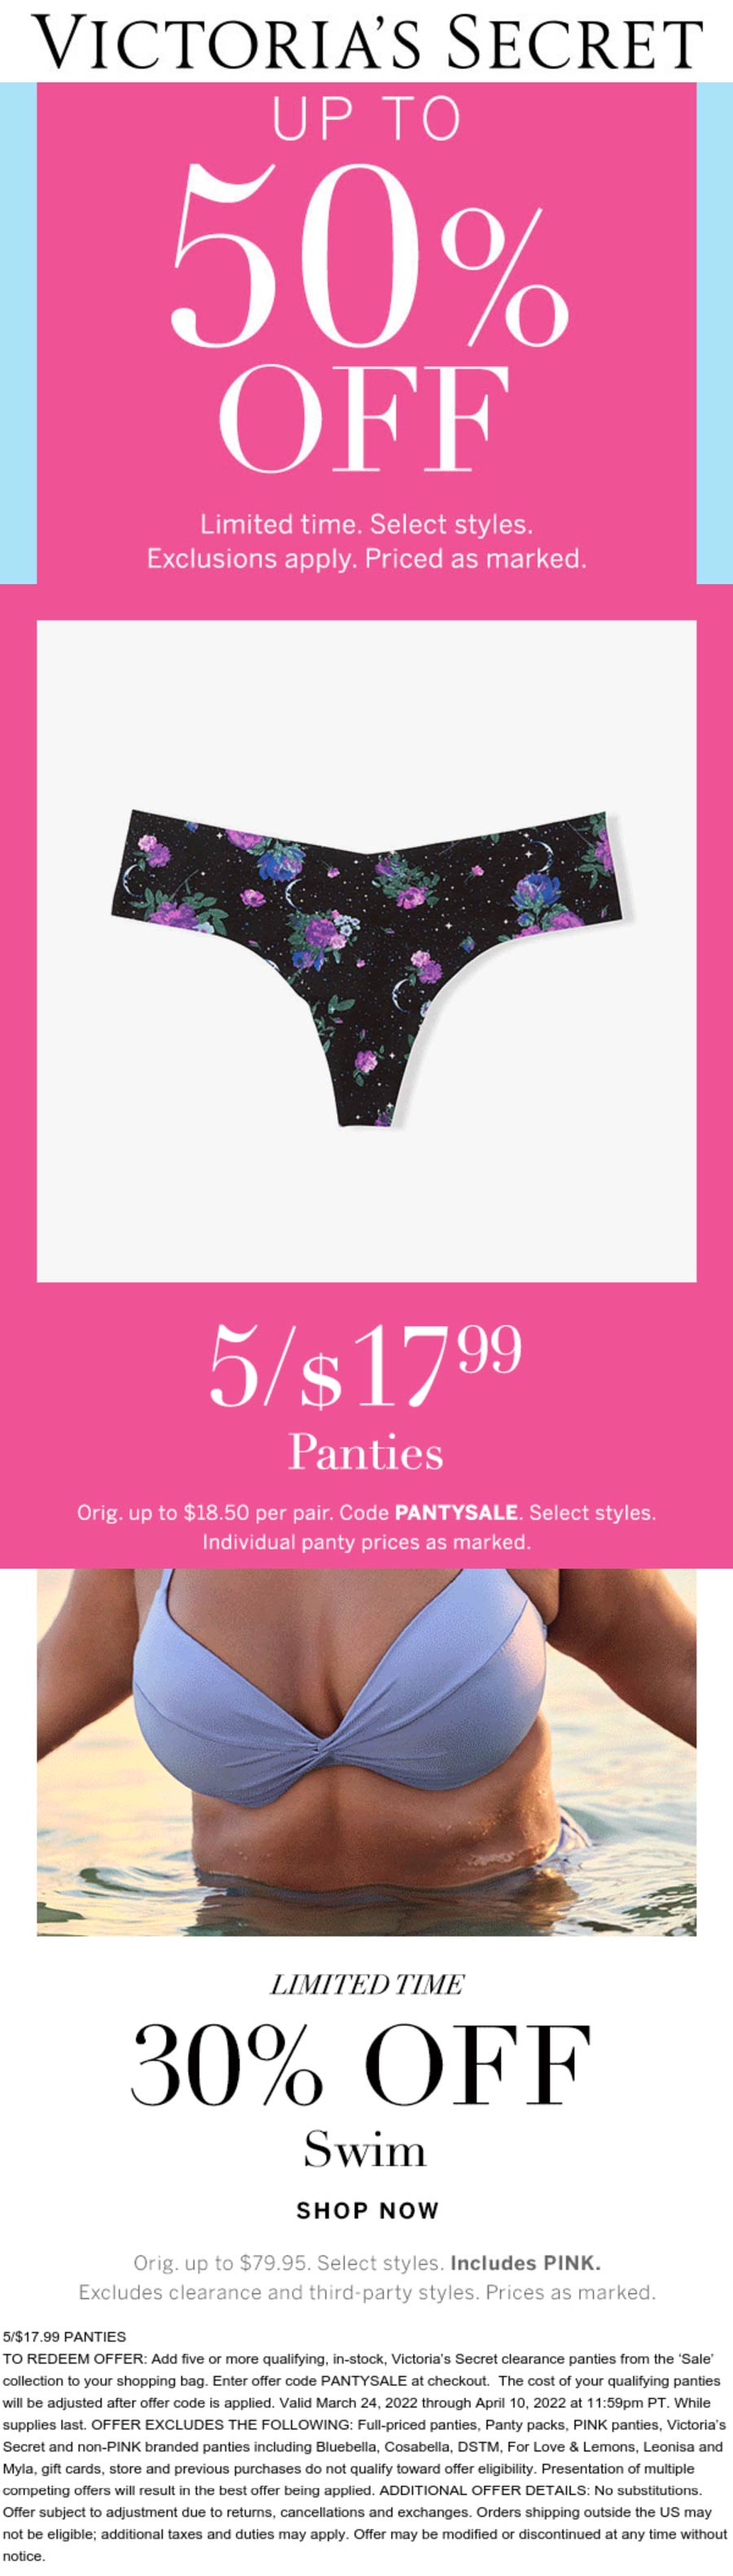 Victorias Secret stores Coupon  5 for $18 panties & 30% off swim at Victorias Secret via promo code PANTYSALE #victoriassecret 